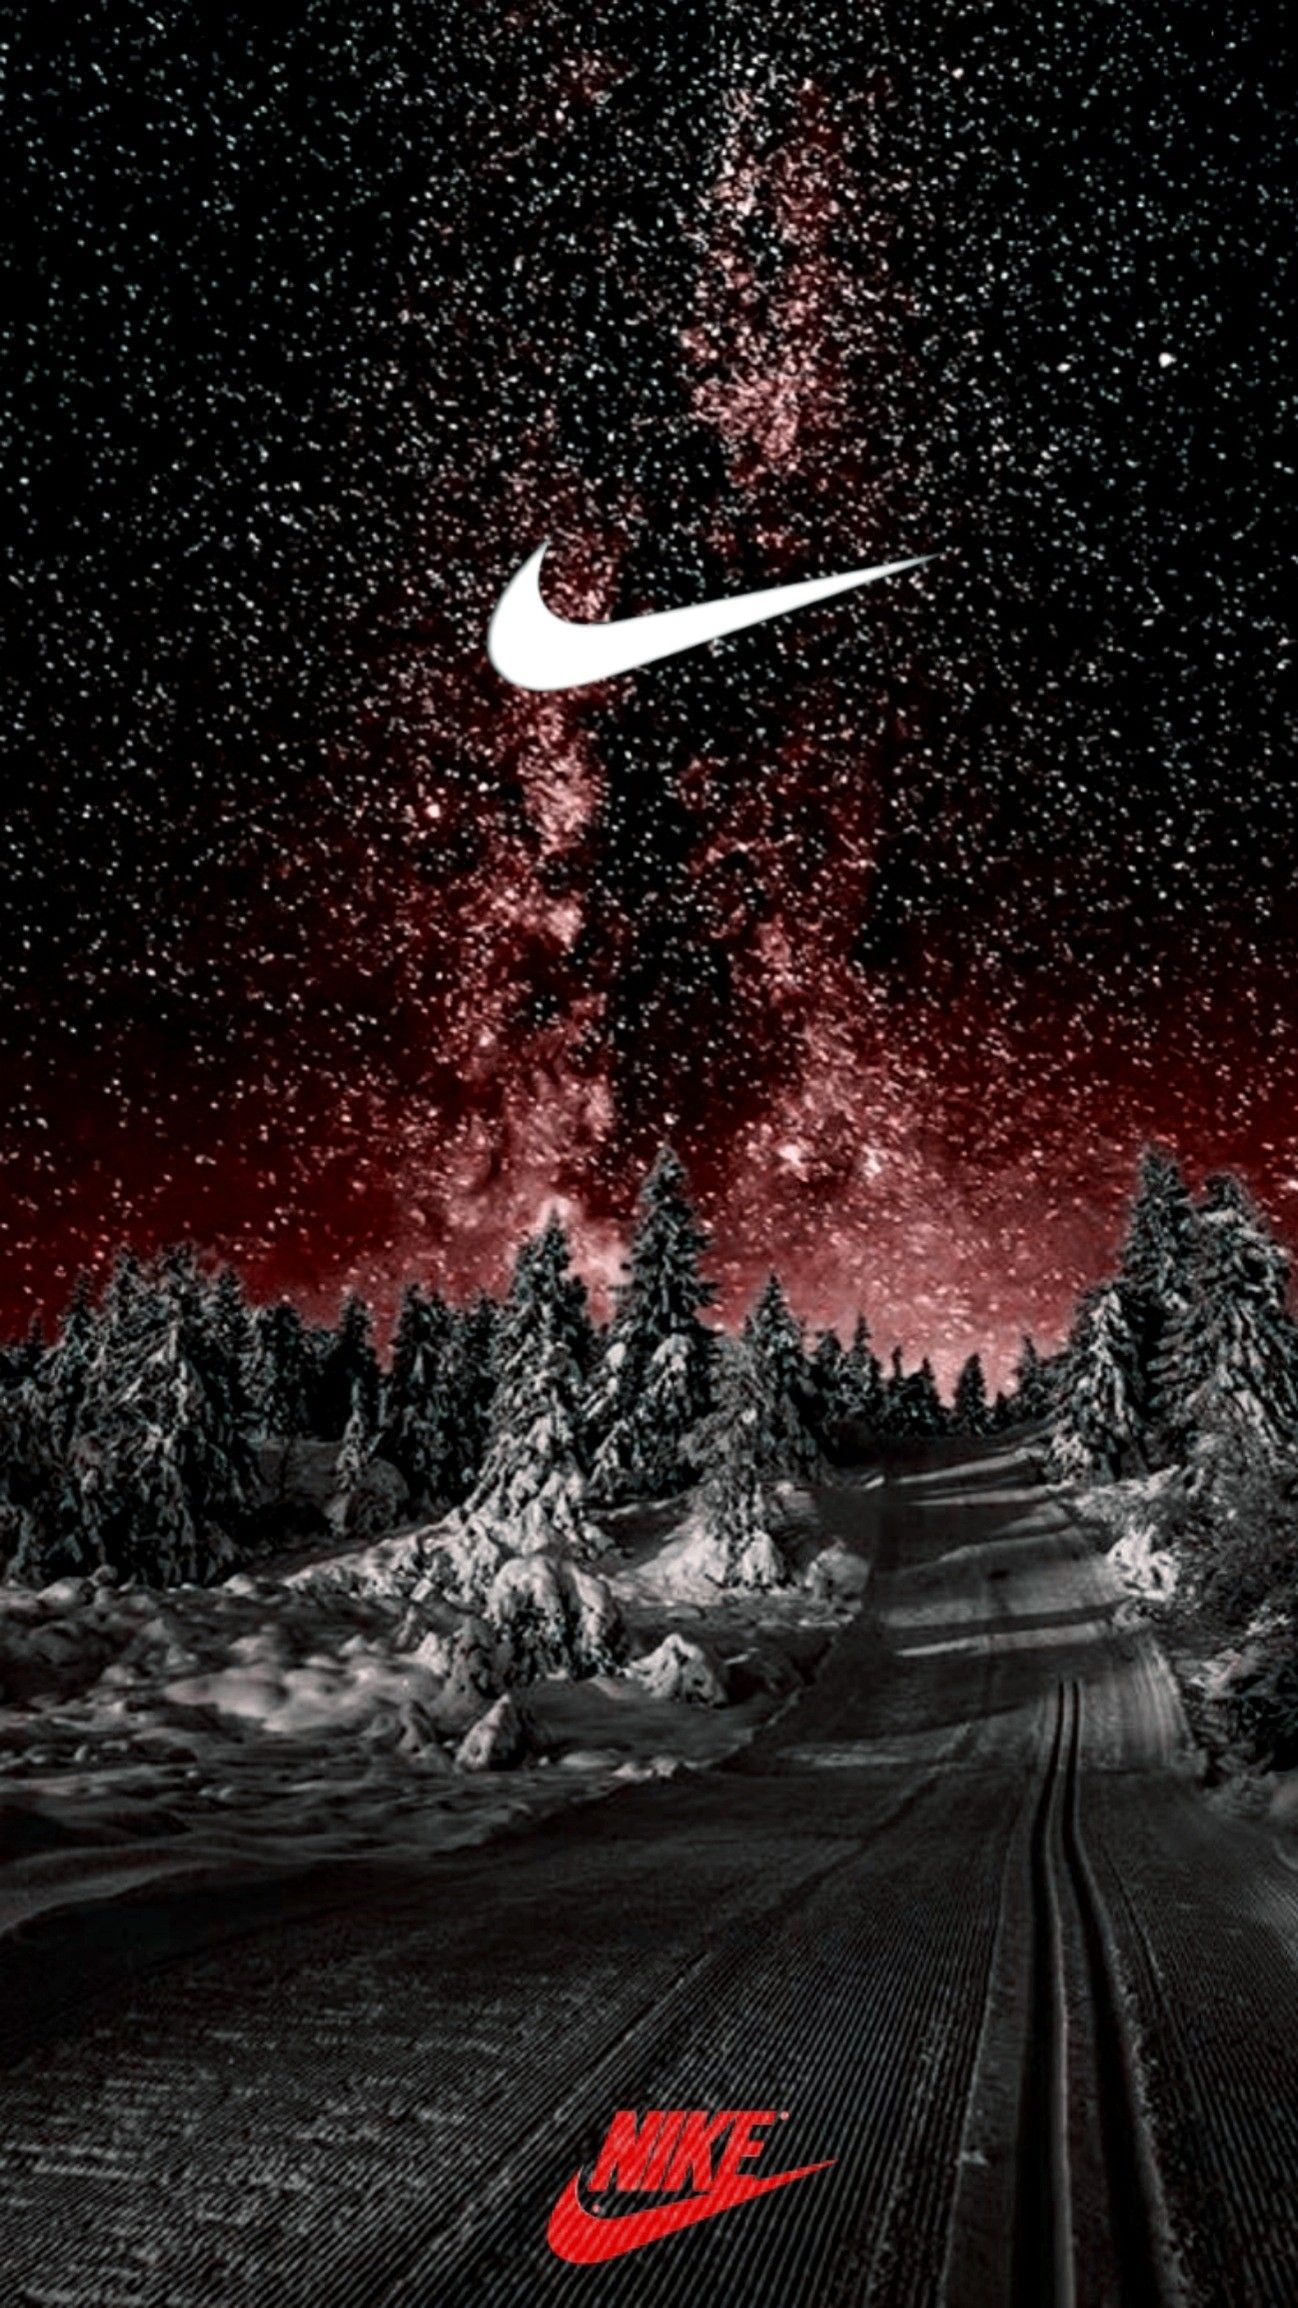 Sneakers. Nike wallpaper, Nike wallpaper iphone, Cool nike wallpaper